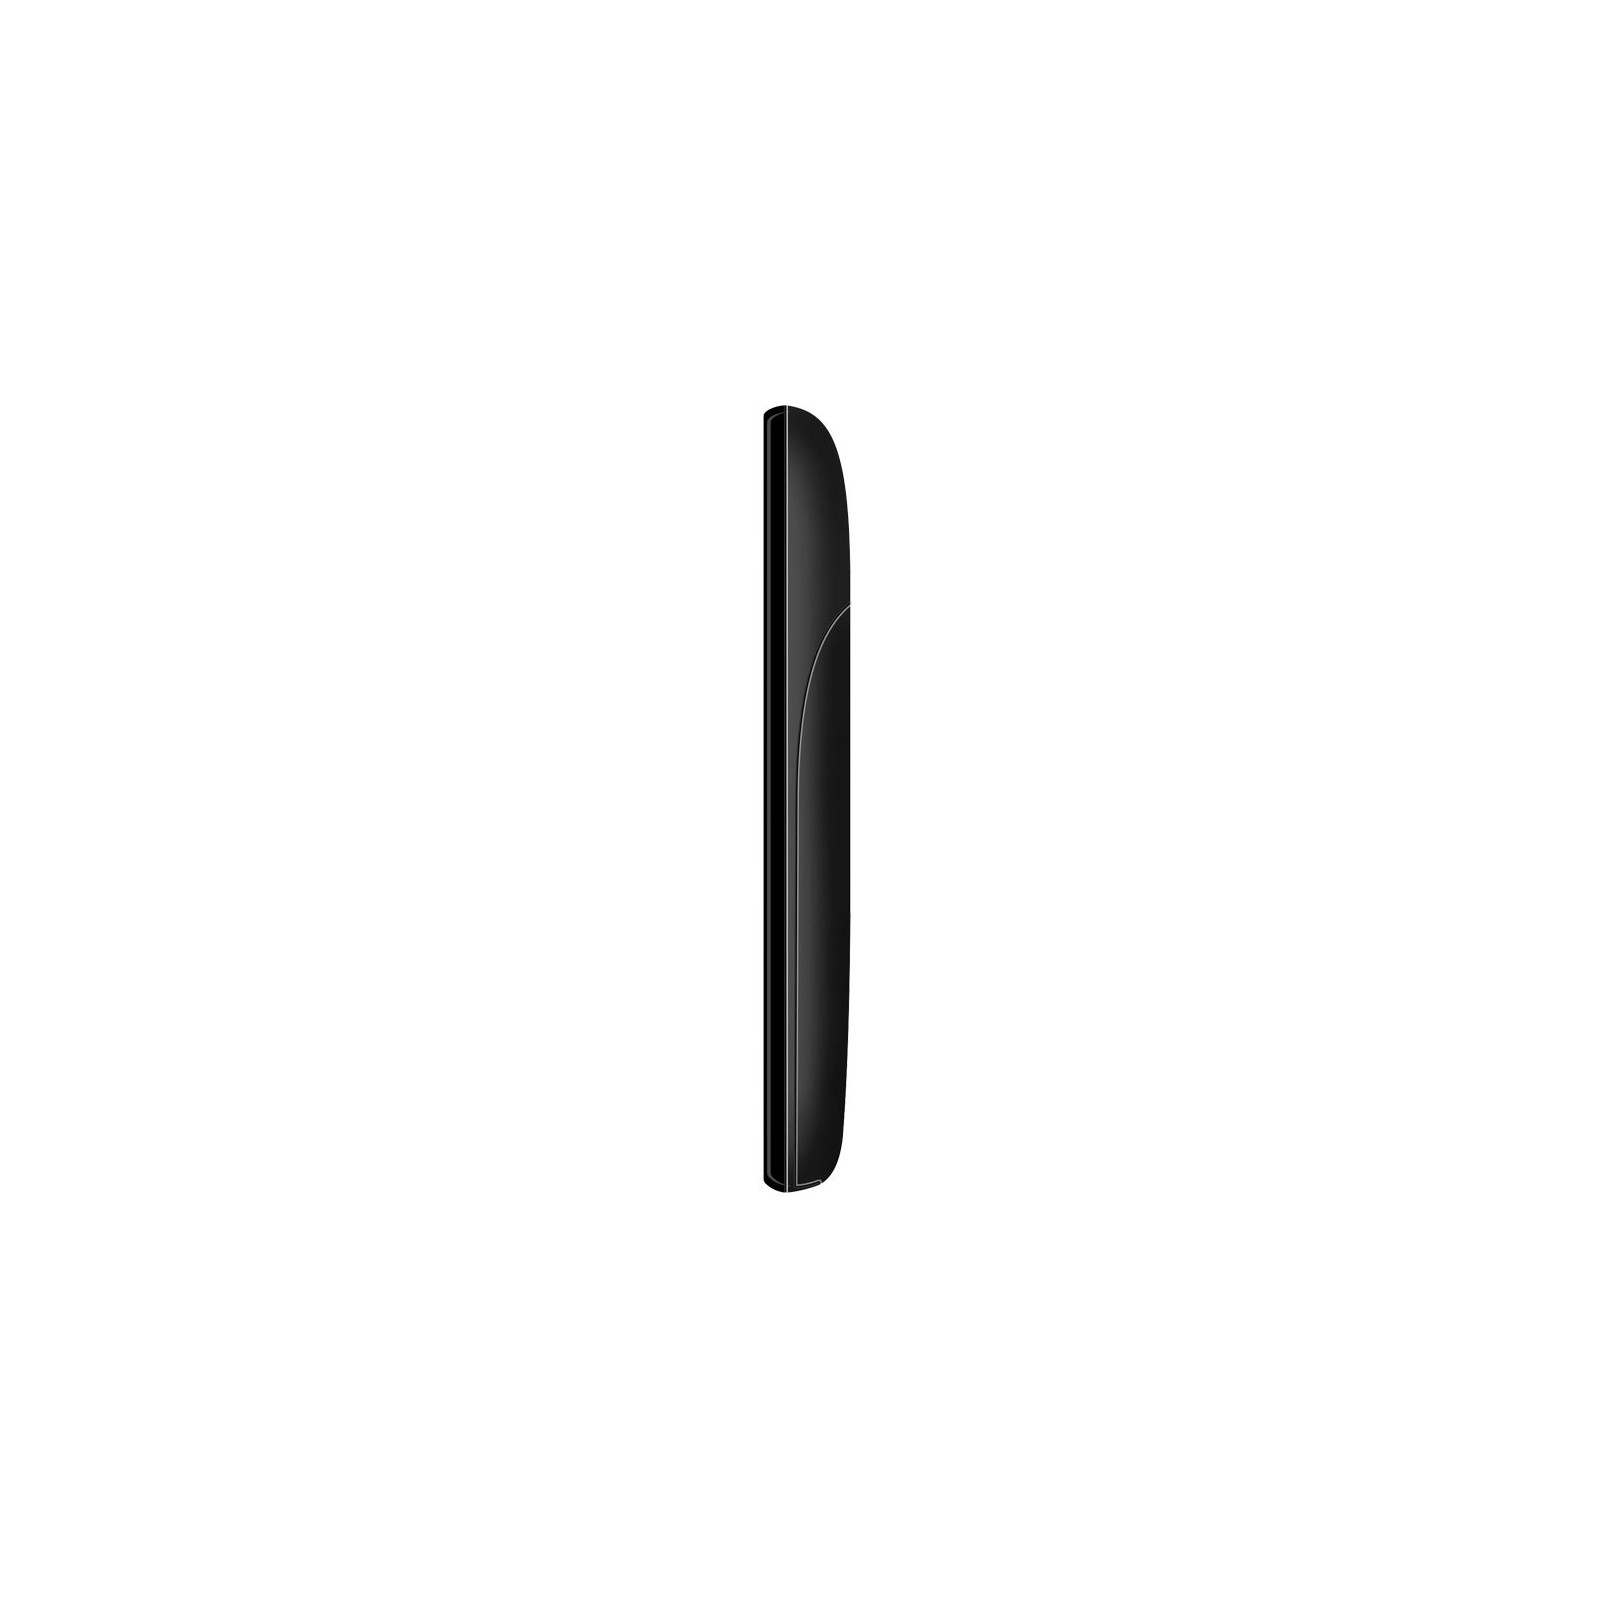 Мобильный телефон Maxcom MM35D Black изображение 6